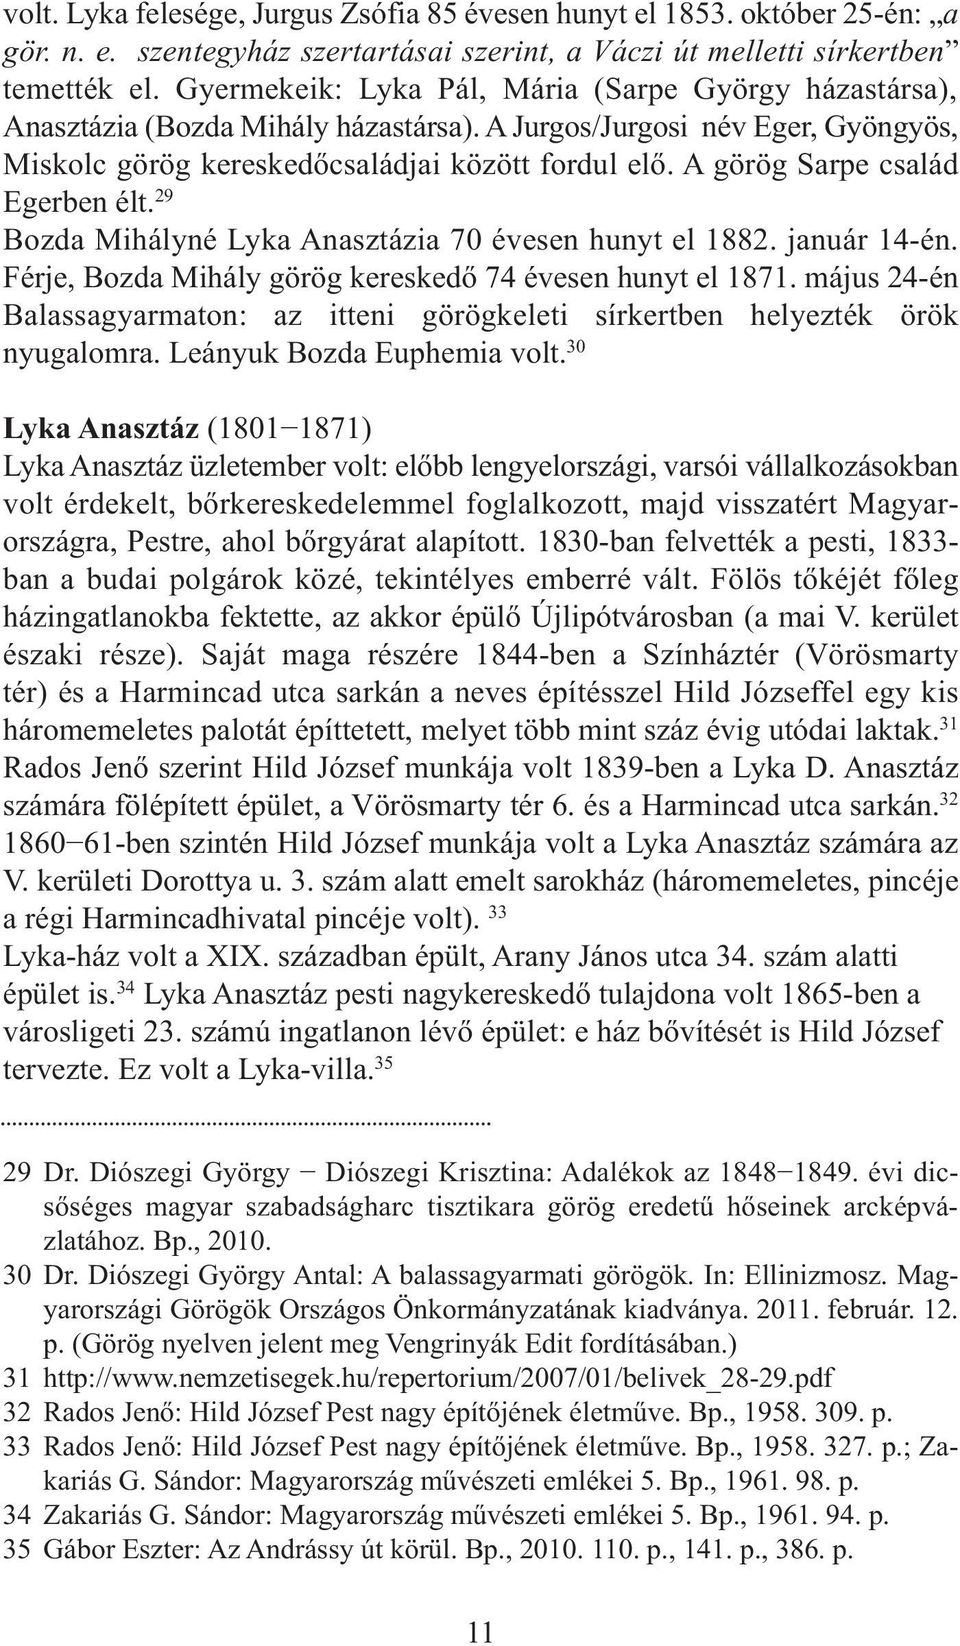 A görög Sarpe család Egerben élt. 29 Bozda Mihályné Lyka Anasztázia 70 évesen hunyt el 1882. január 14-én. Férje, Bozda Mihály görög kereskedő 74 évesen hunyt el 1871.